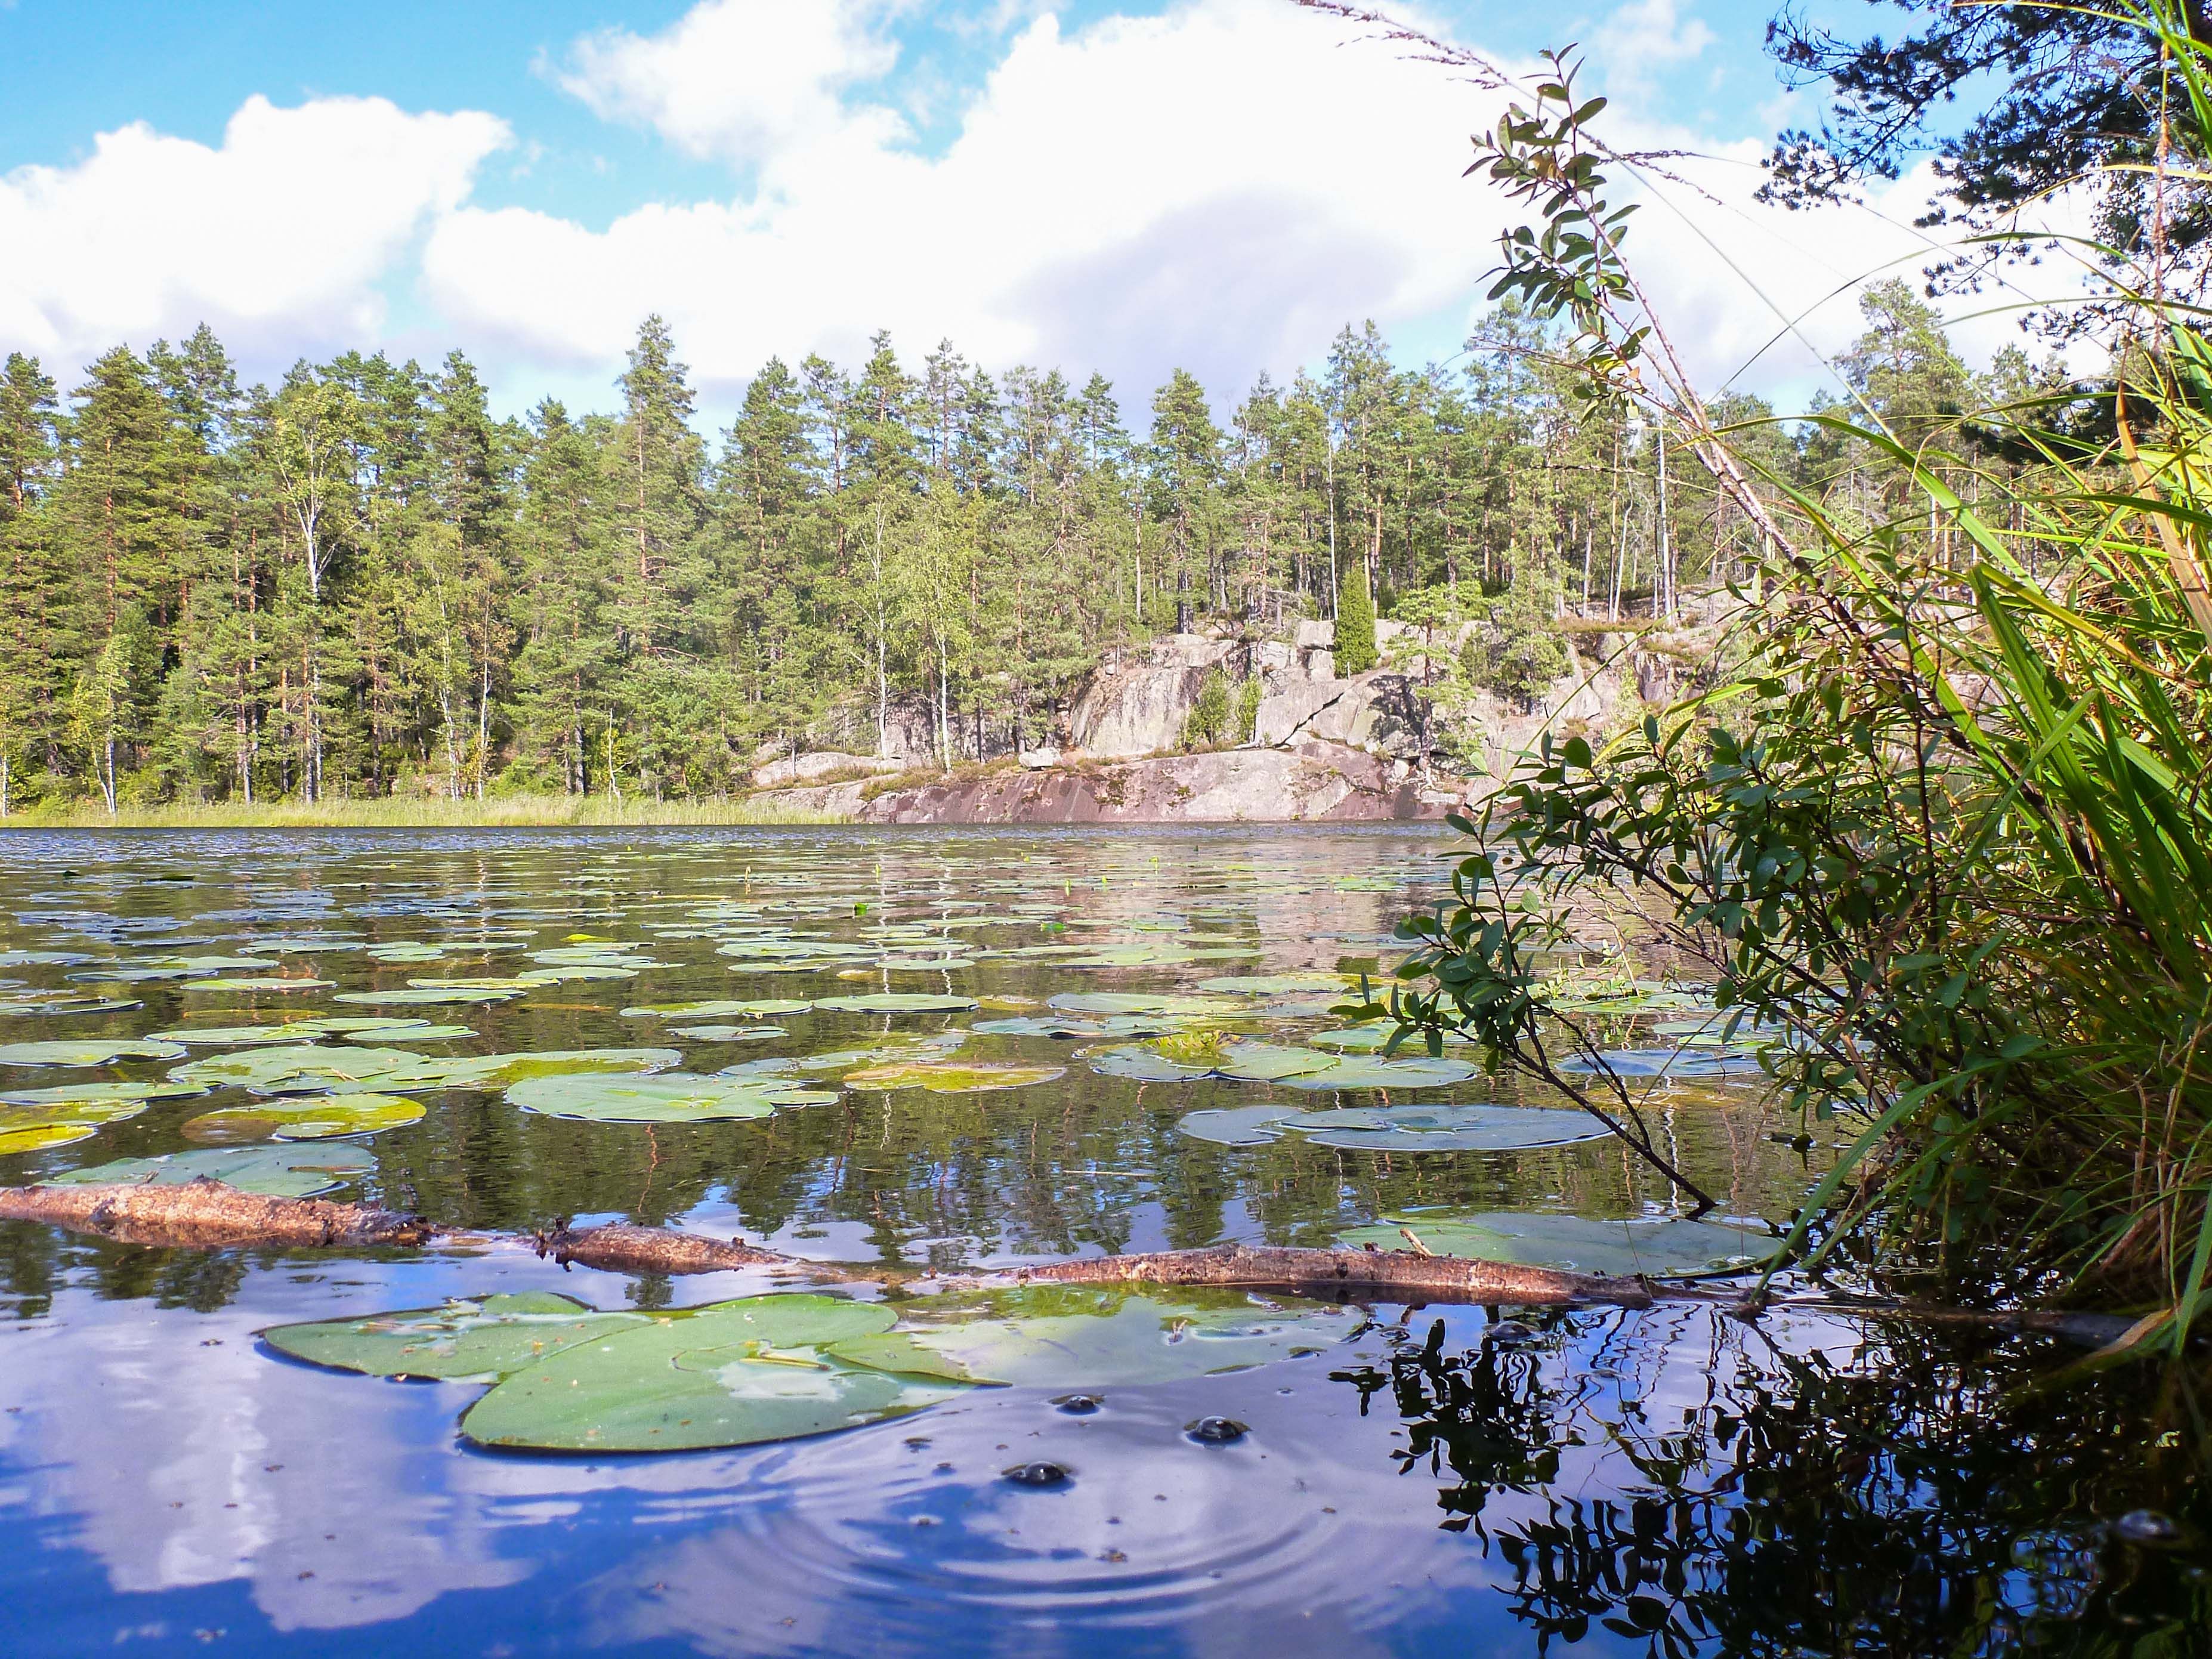 Названия финских озер